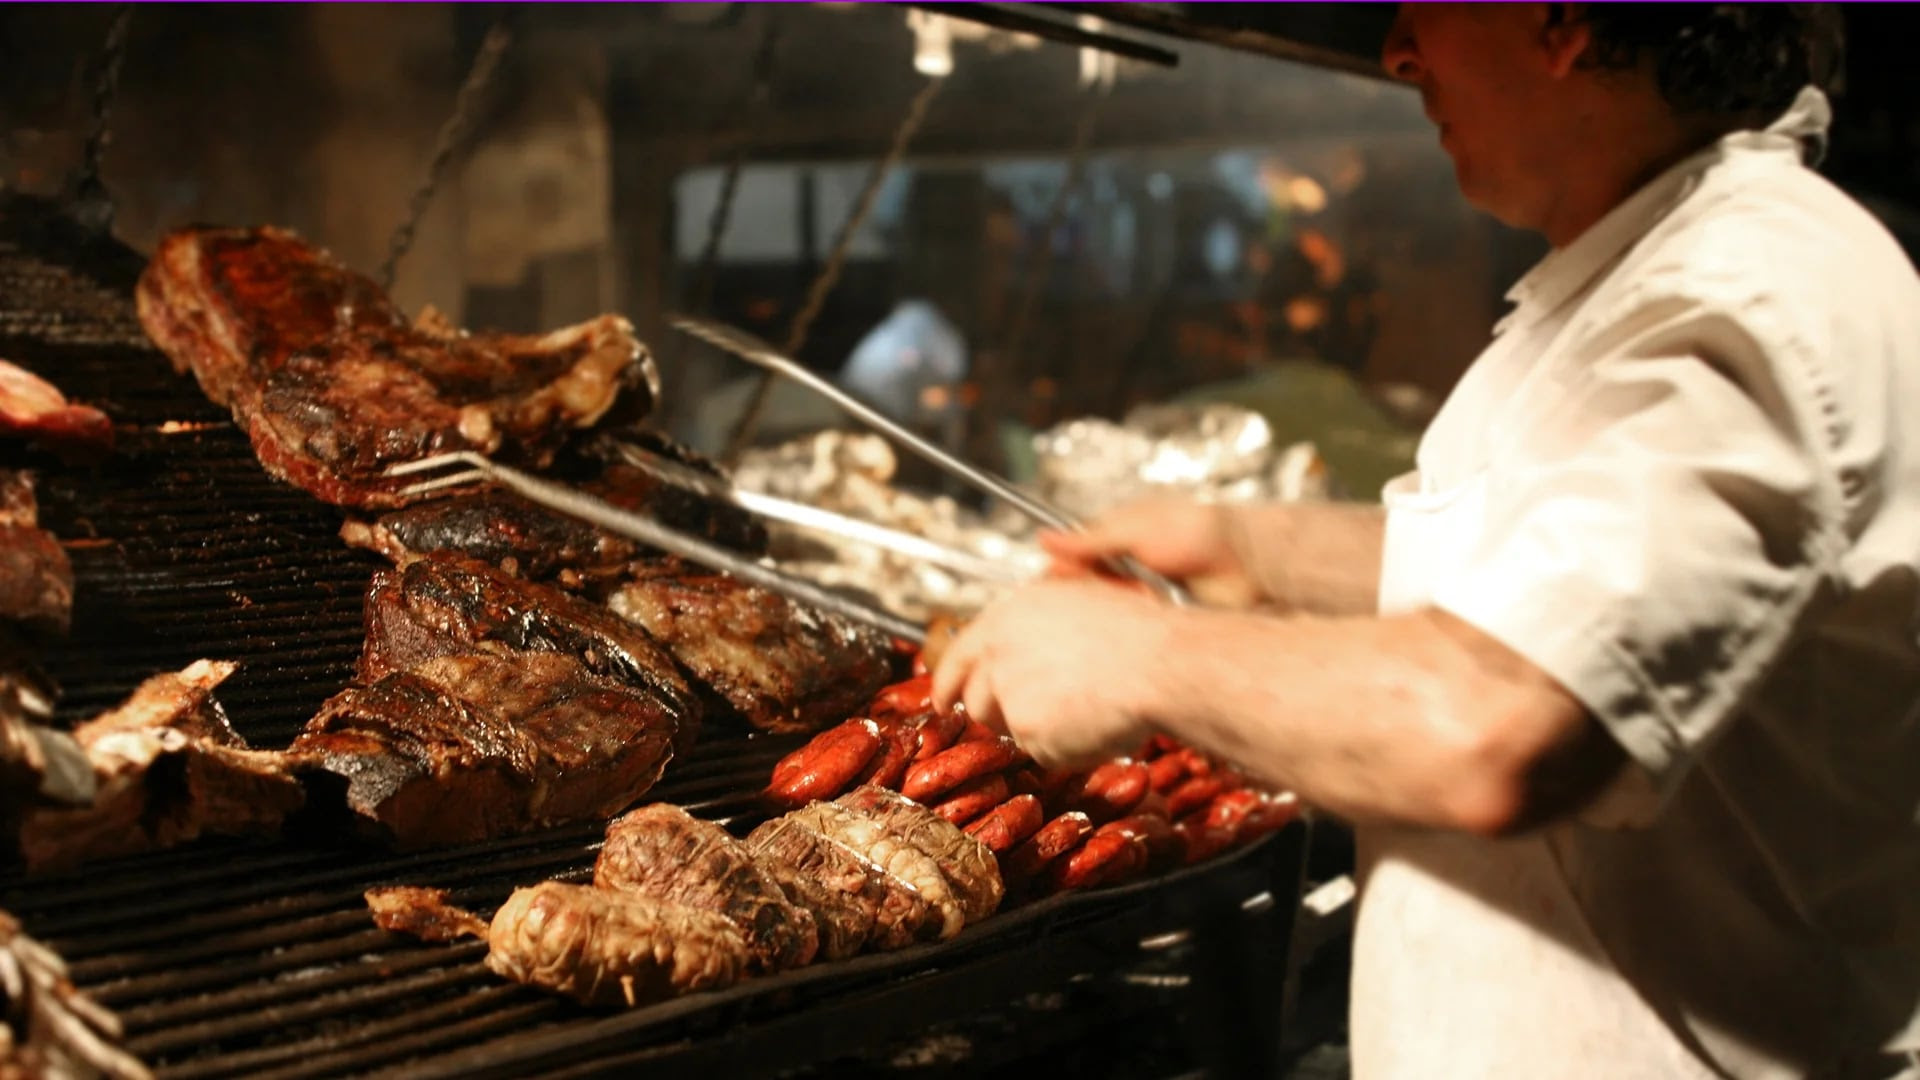 El asado es una de las comidas más emblemáticas de Argentina y National Geographich dio cuenta de esto, poniendo a la carne de res entre los alimentos más aclamados por los turistas (Getty)